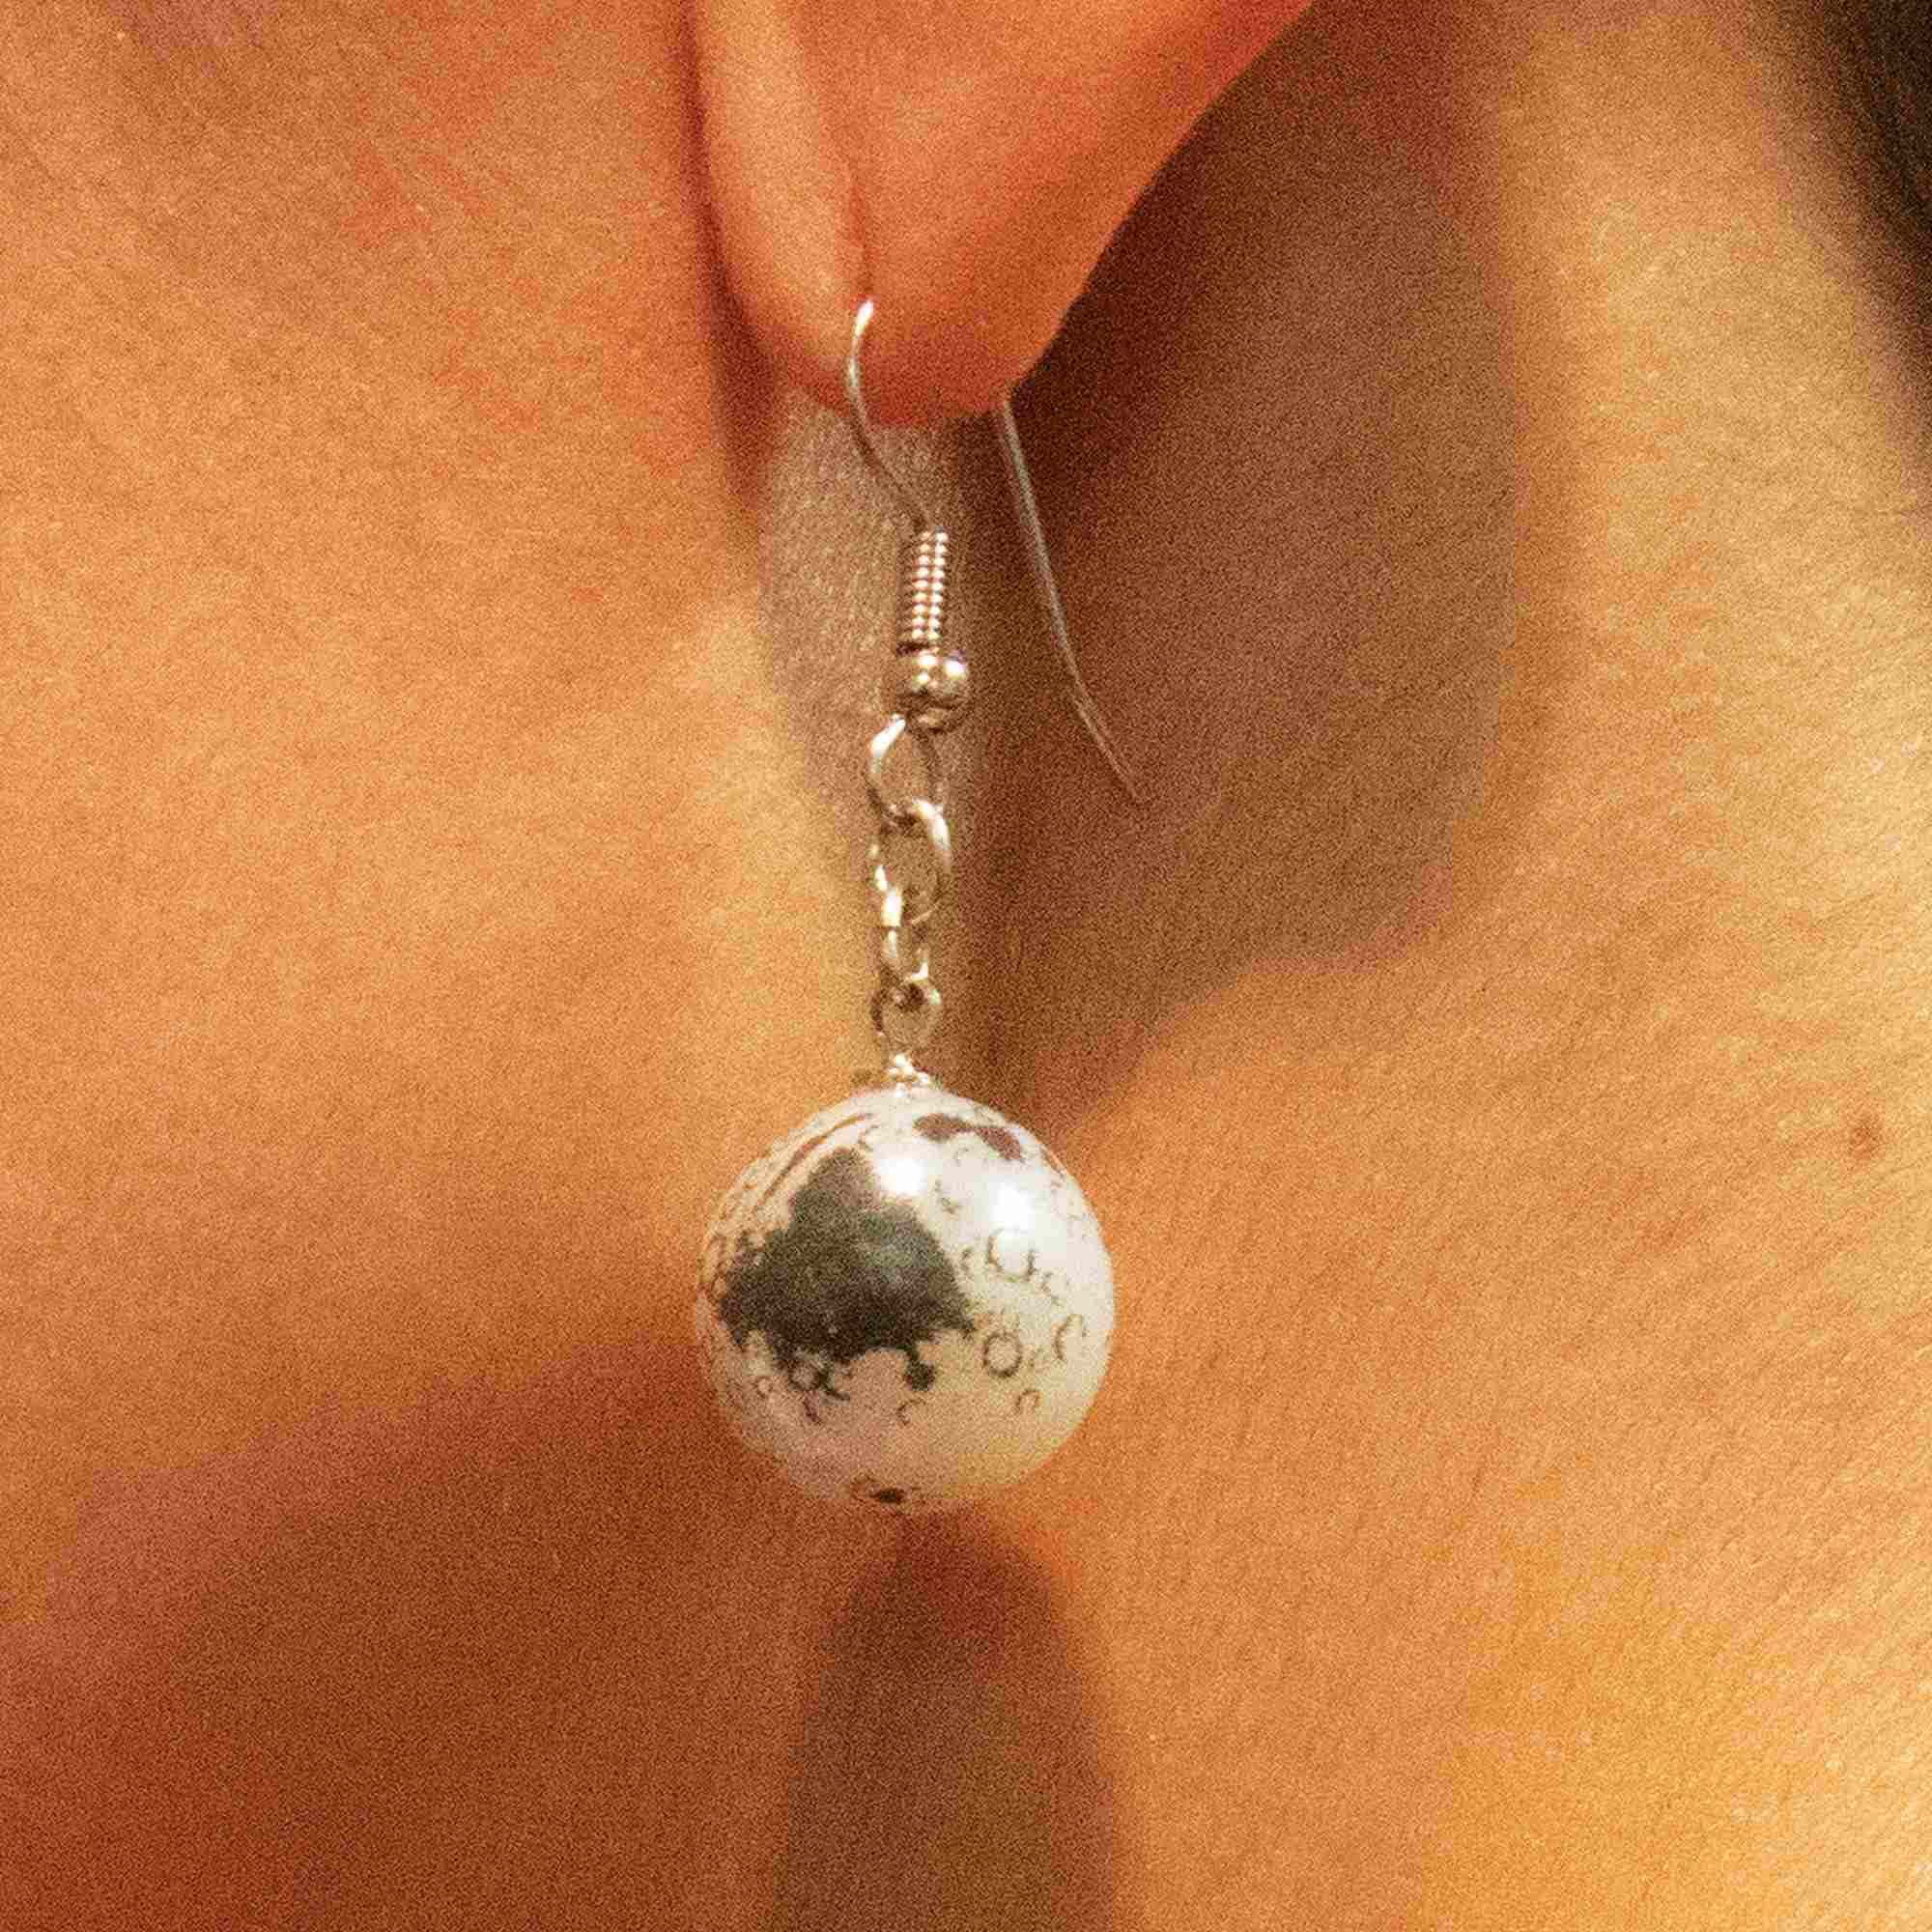 moon earrings on woman facing side